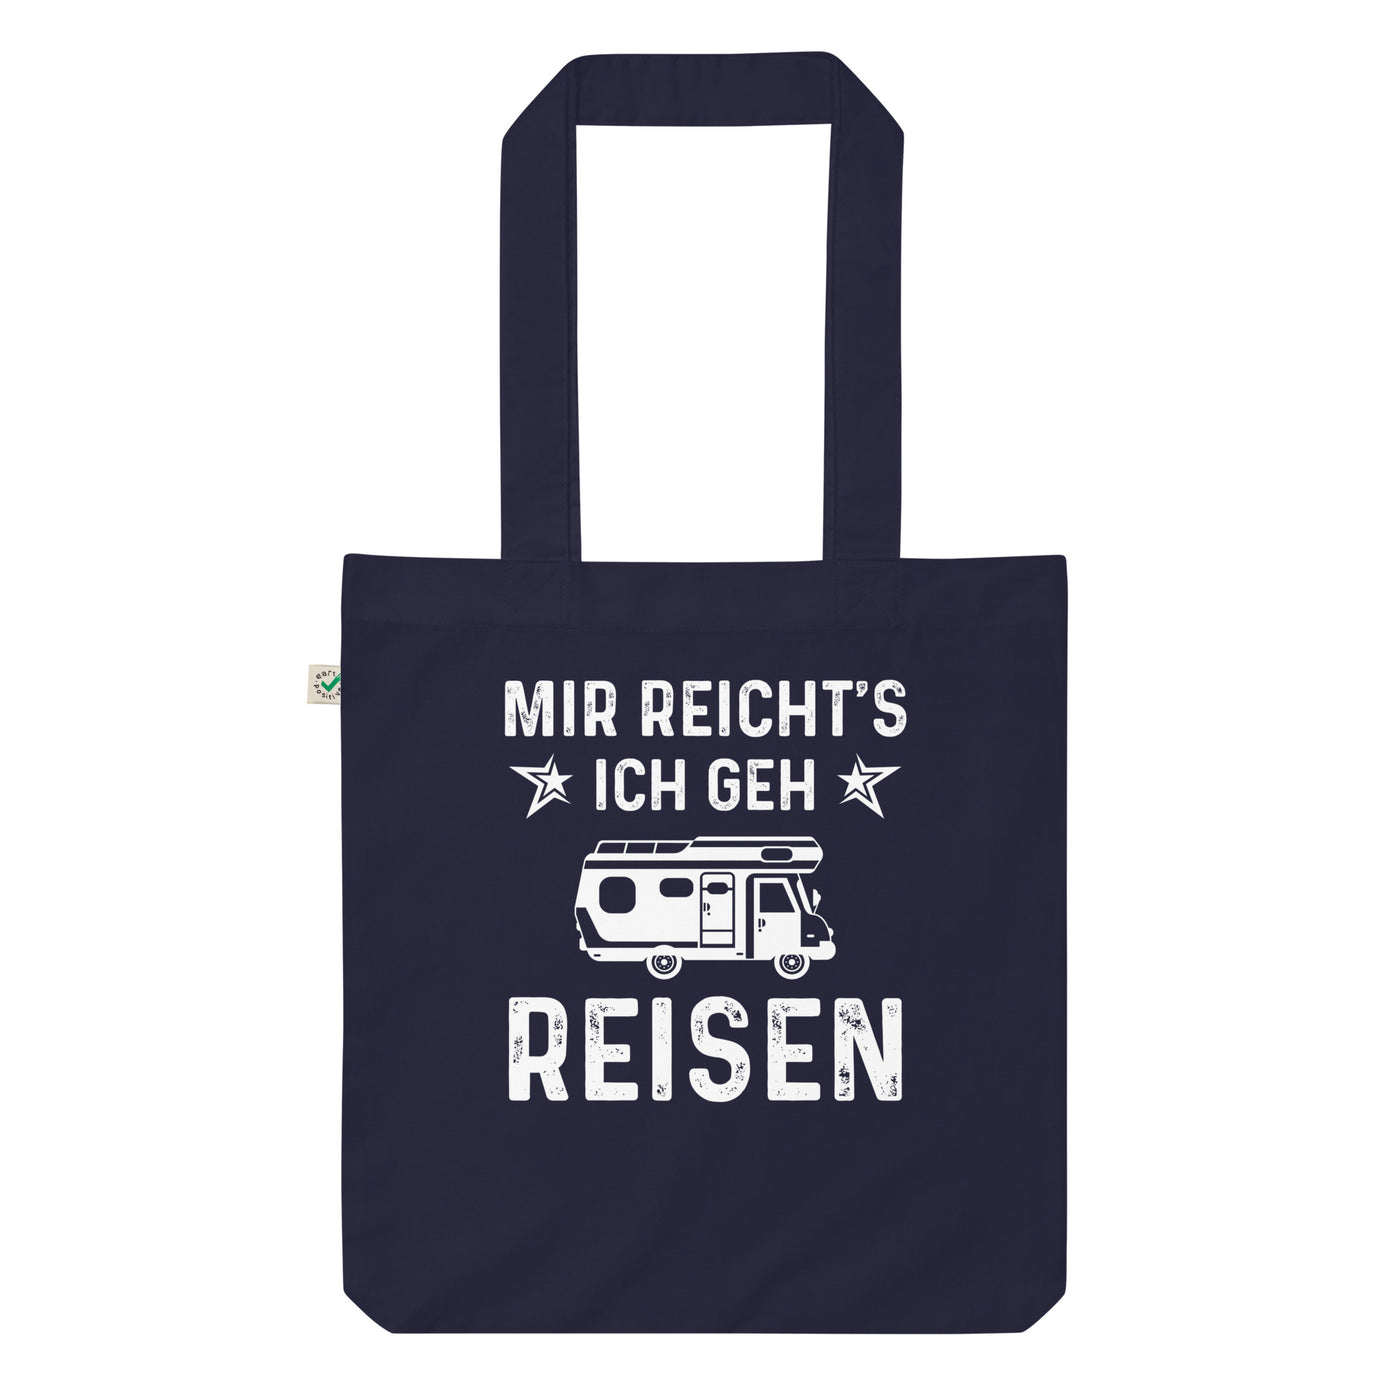 Mir Reicht'S Ich Gen Reisen - Organic Einkaufstasche camping Navy